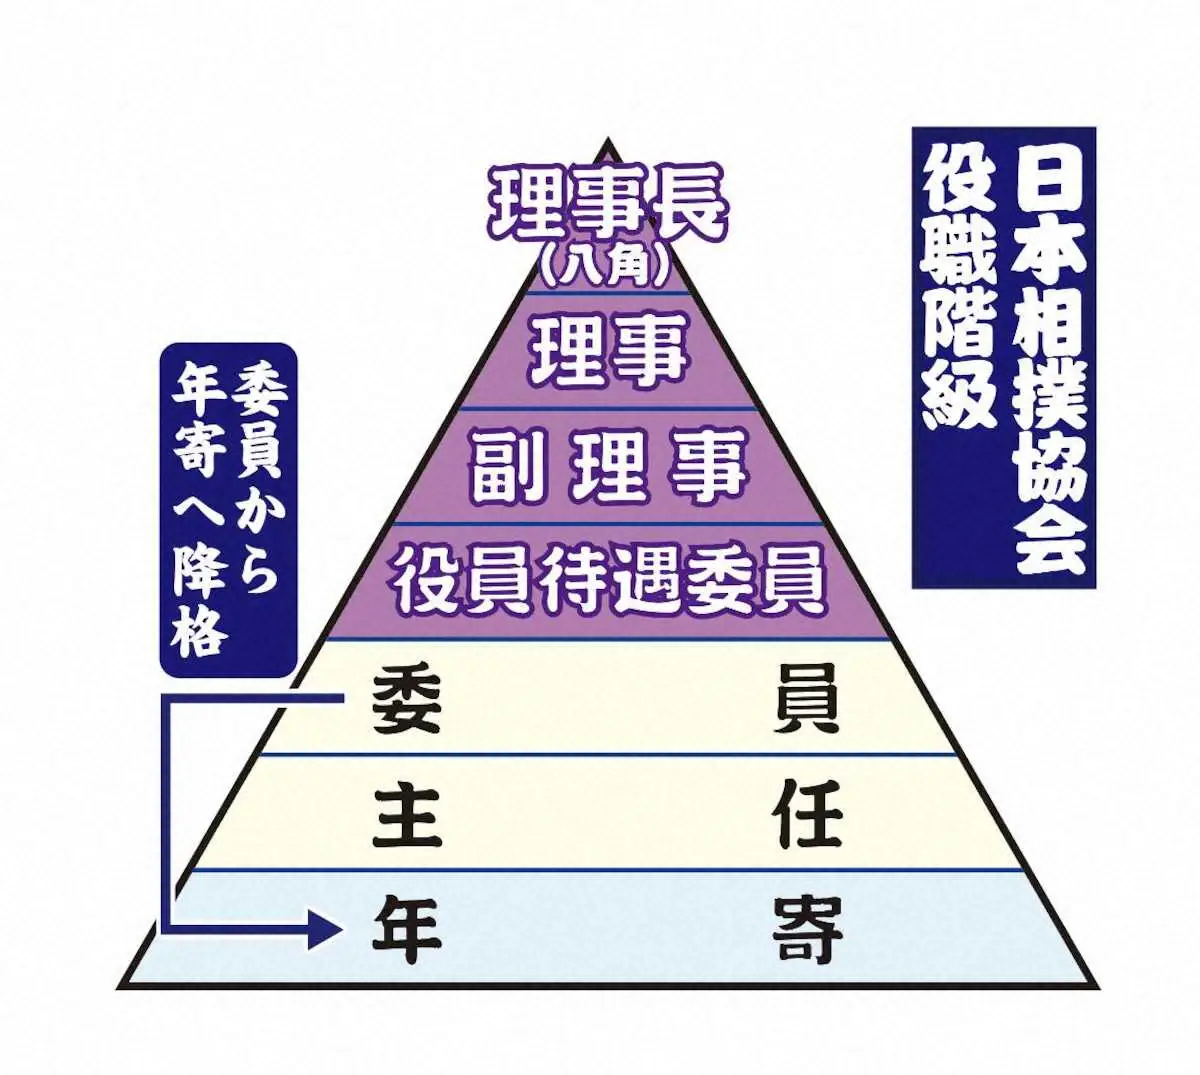 日本相撲協会の役職階級